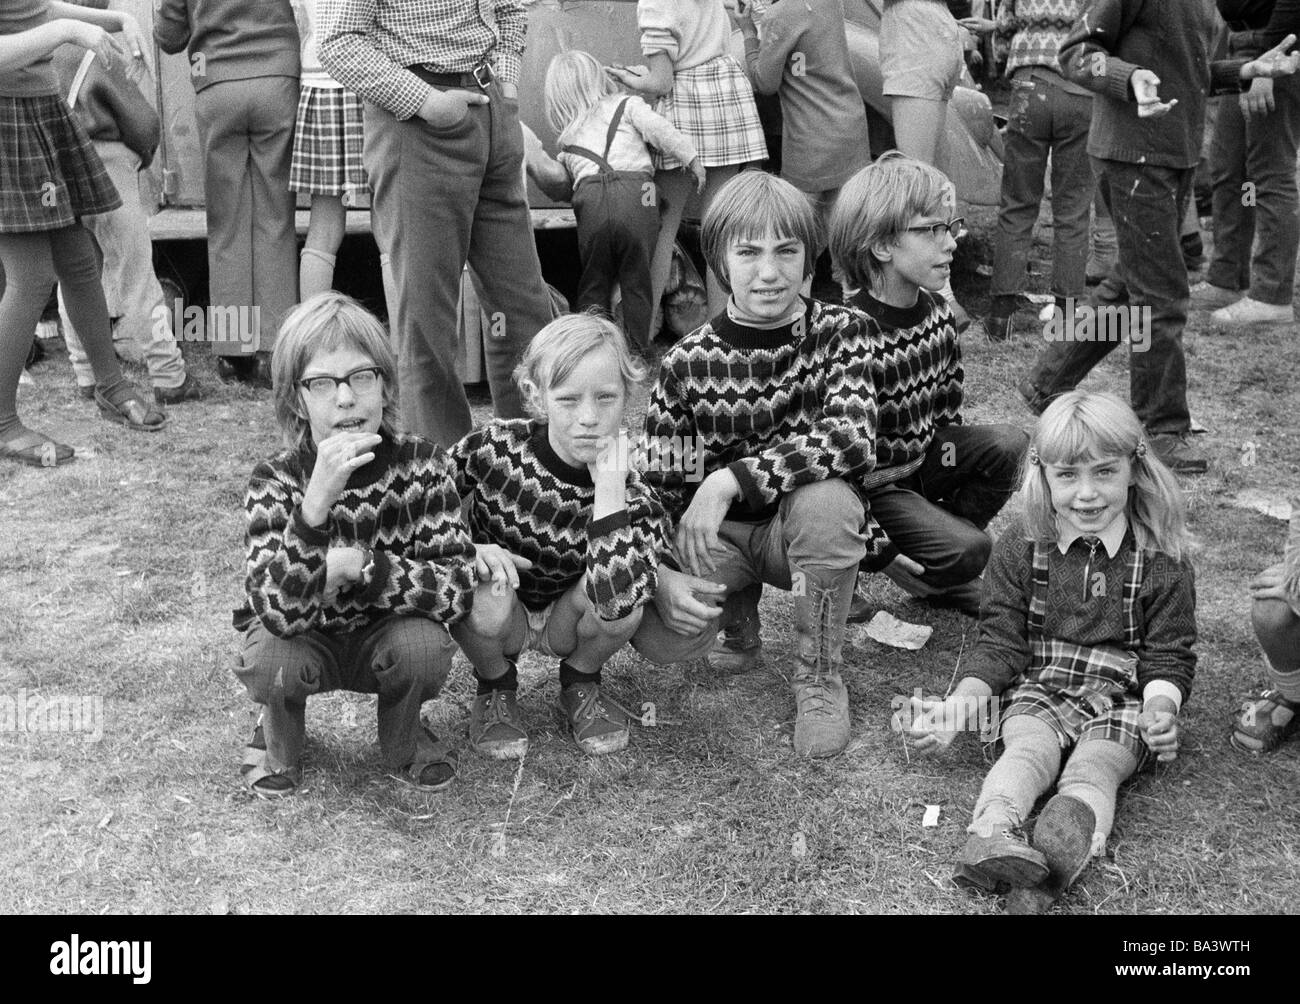 70, fotografía en blanco y negro, gente, niños, cuatro muchachos, Little Girl, ropa idéntica, hermanos, los niños de la calle, de edades comprendidas entre los 8 a 12 años, con edades